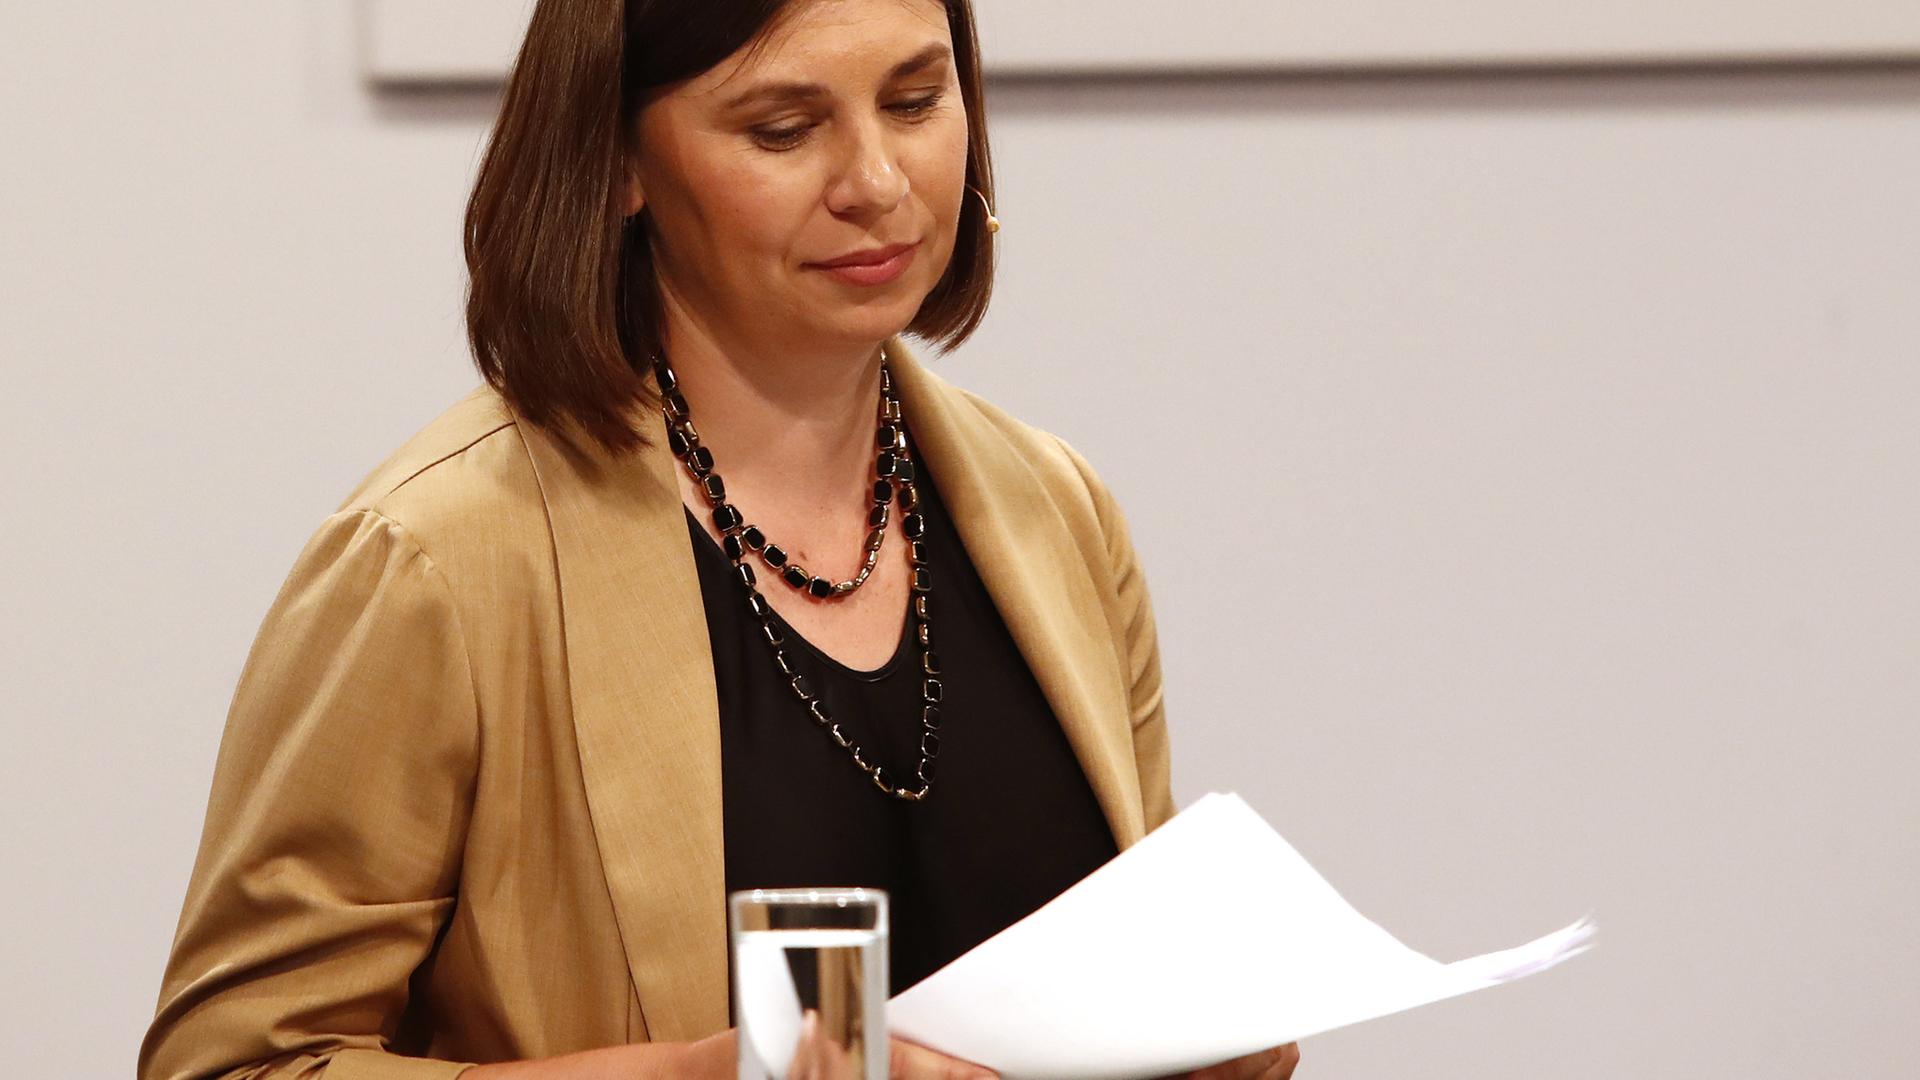 Die in der Ukraine geborene Autorin Tanja Maljartschuk am 28.6.2023 hält eine Rede im Rahmen der Eröffnung der "47. Tage der deutschsprachigen Literatur" in Klagenfurt.